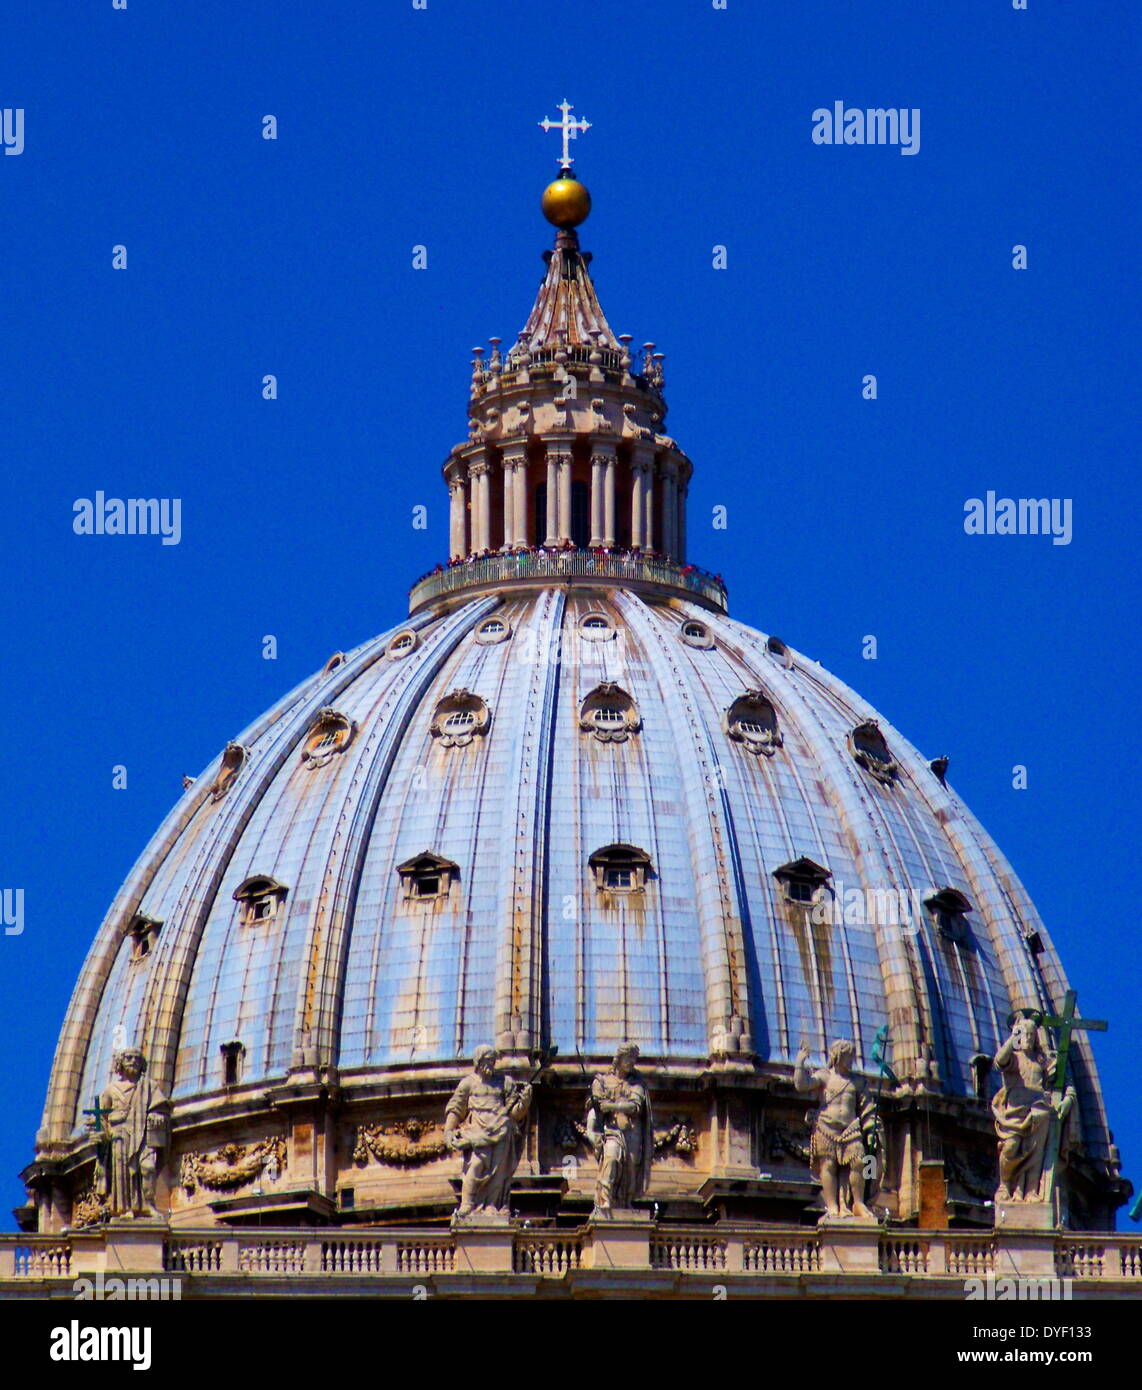 La cupola della Basilica di San Pietro in Vaticano, Italia. La chiesa è la più celebre opera di architettura rinascimentale ed è stato progettato da Donato Bramante, Michelangelo, Carlo Maderno e Gian Lorenzo Bernini. La basilica originaria è dal IV secolo d.c. ma il design attuale è stata completata nel 1626. Foto Stock